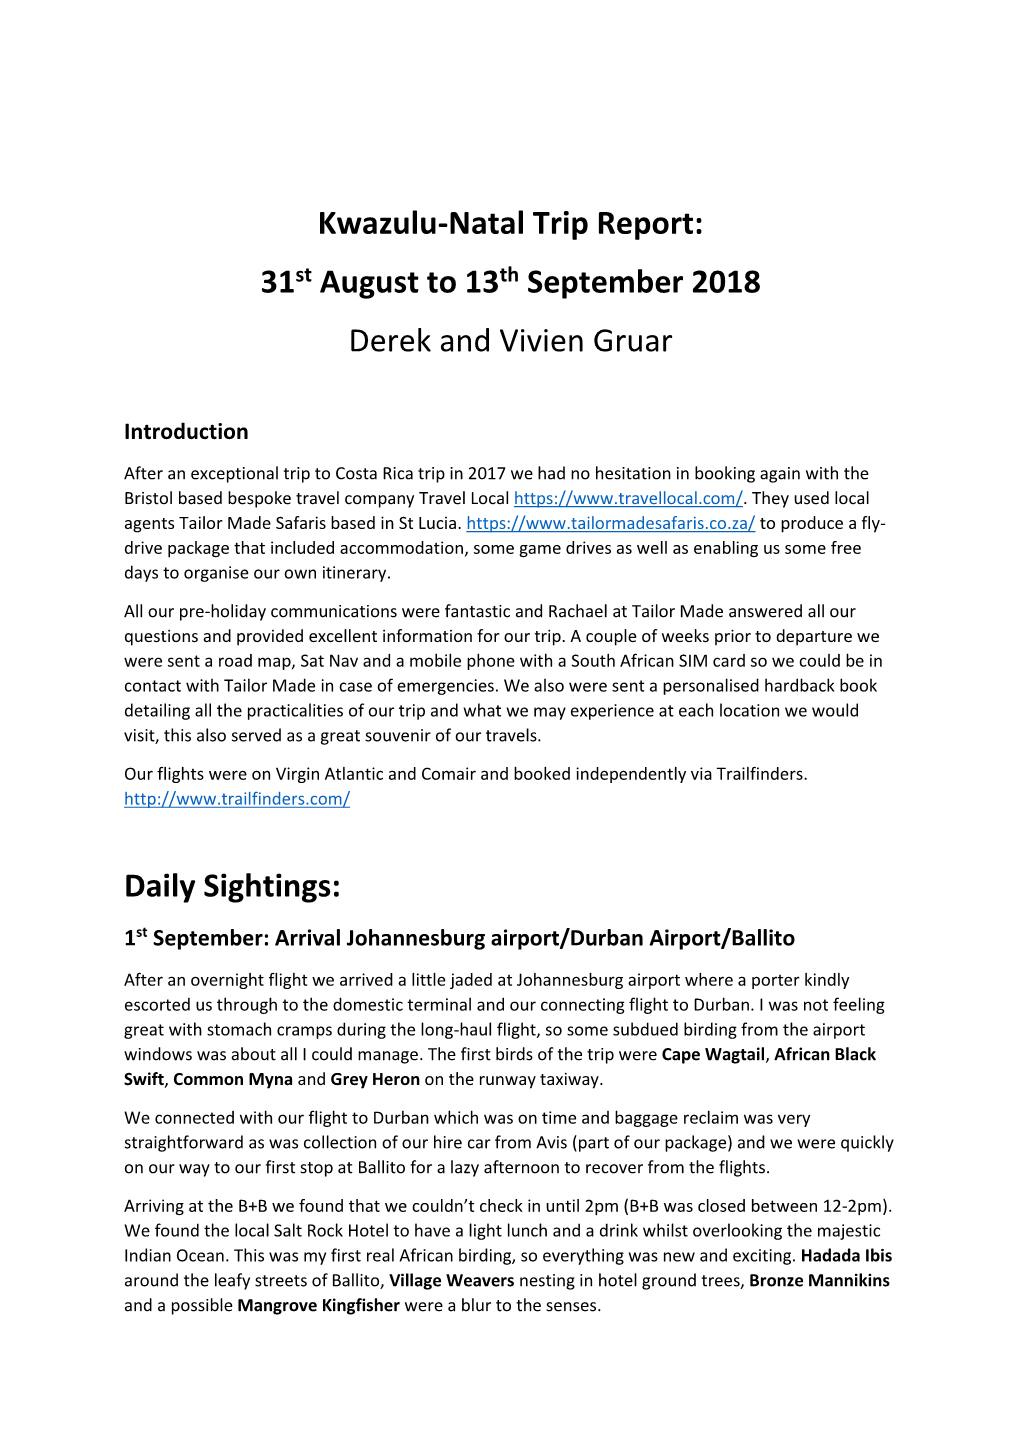 Kwazulu-Natal Trip Report: 31St August to 13Th September 2018 Derek and Vivien Gruar